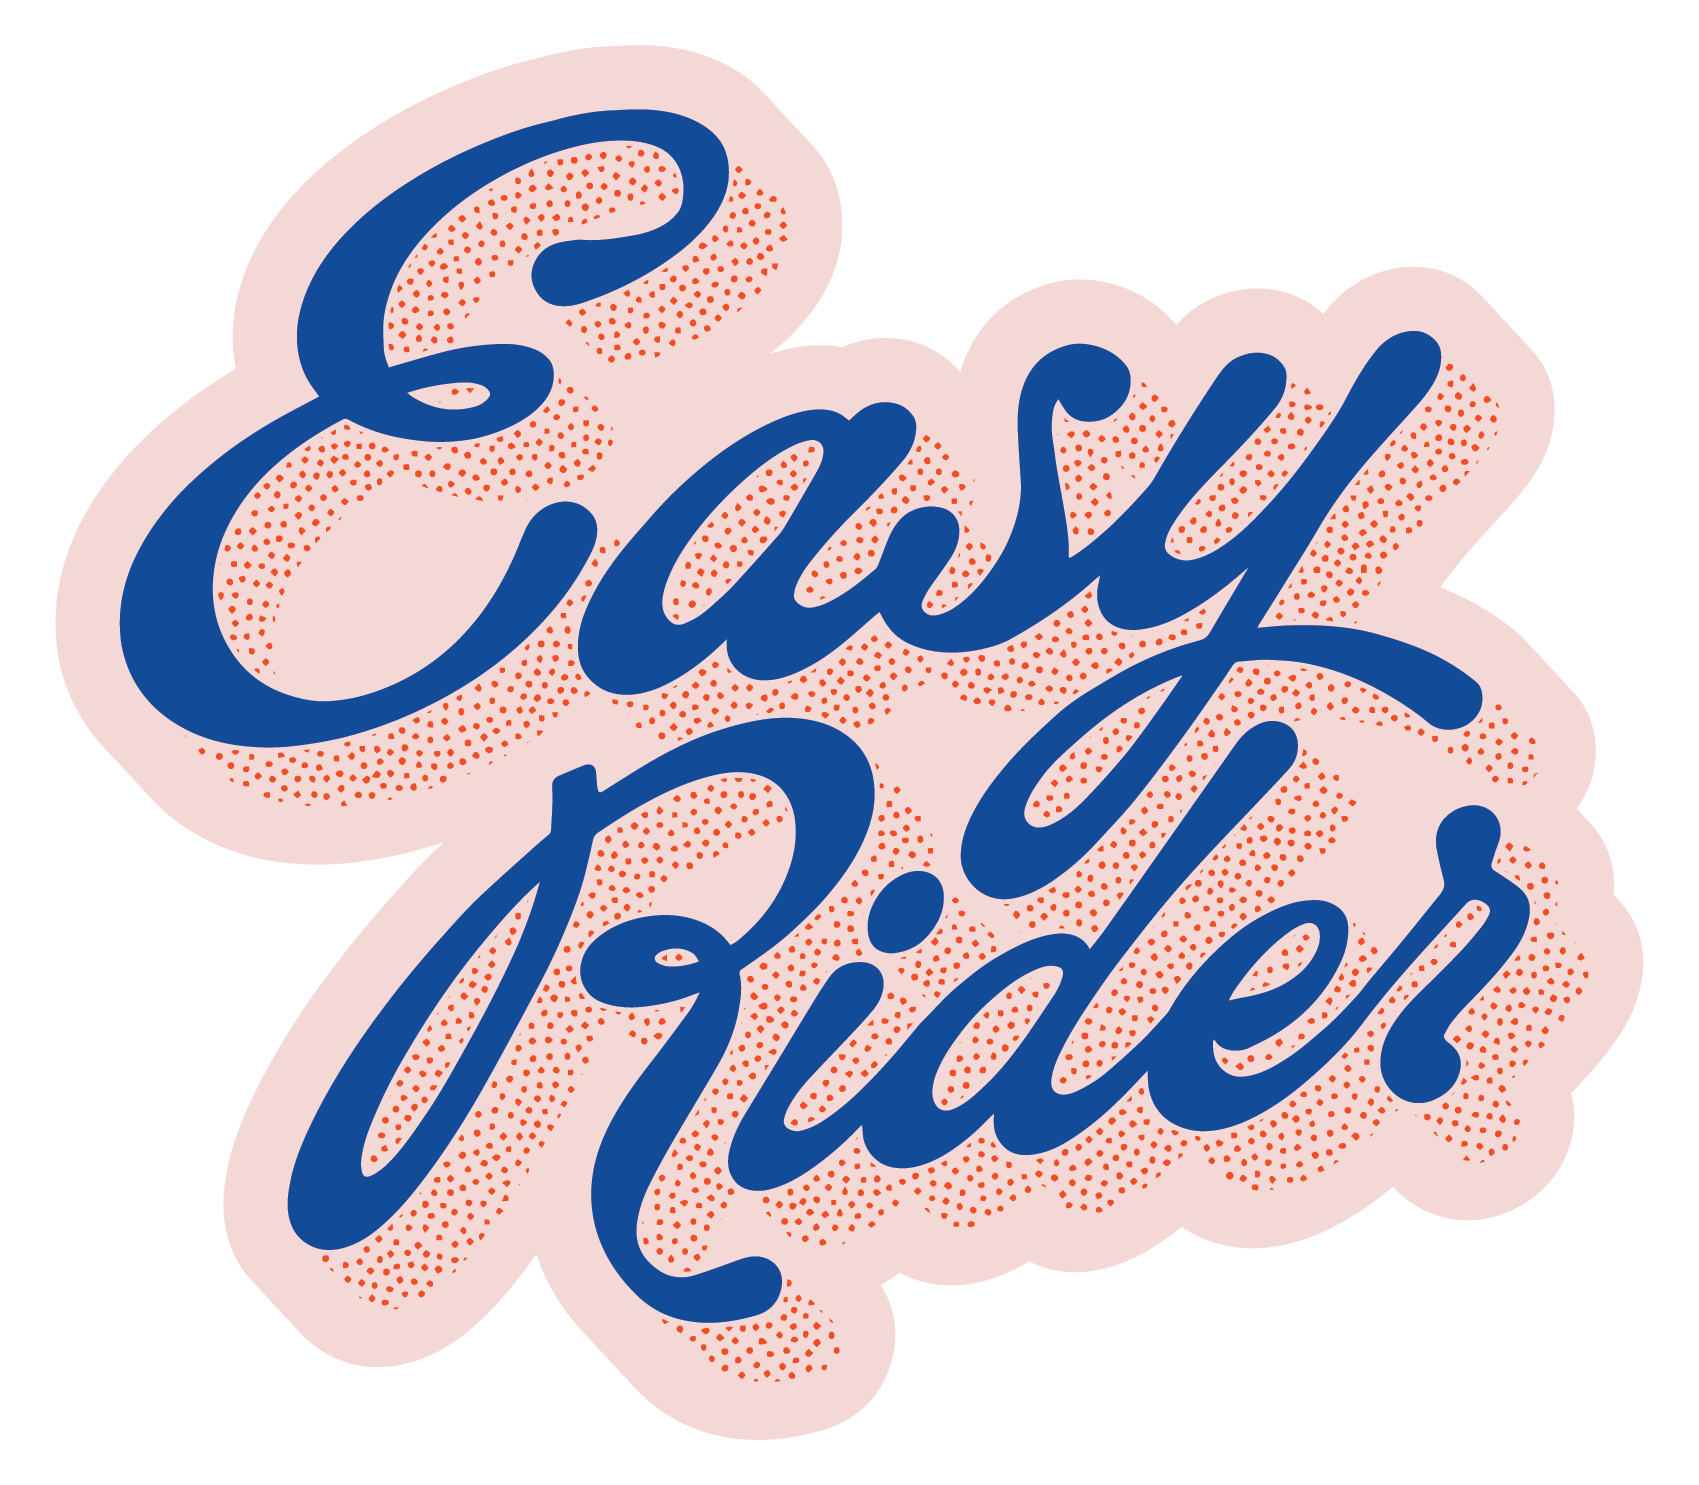 Easy Rider Sticker